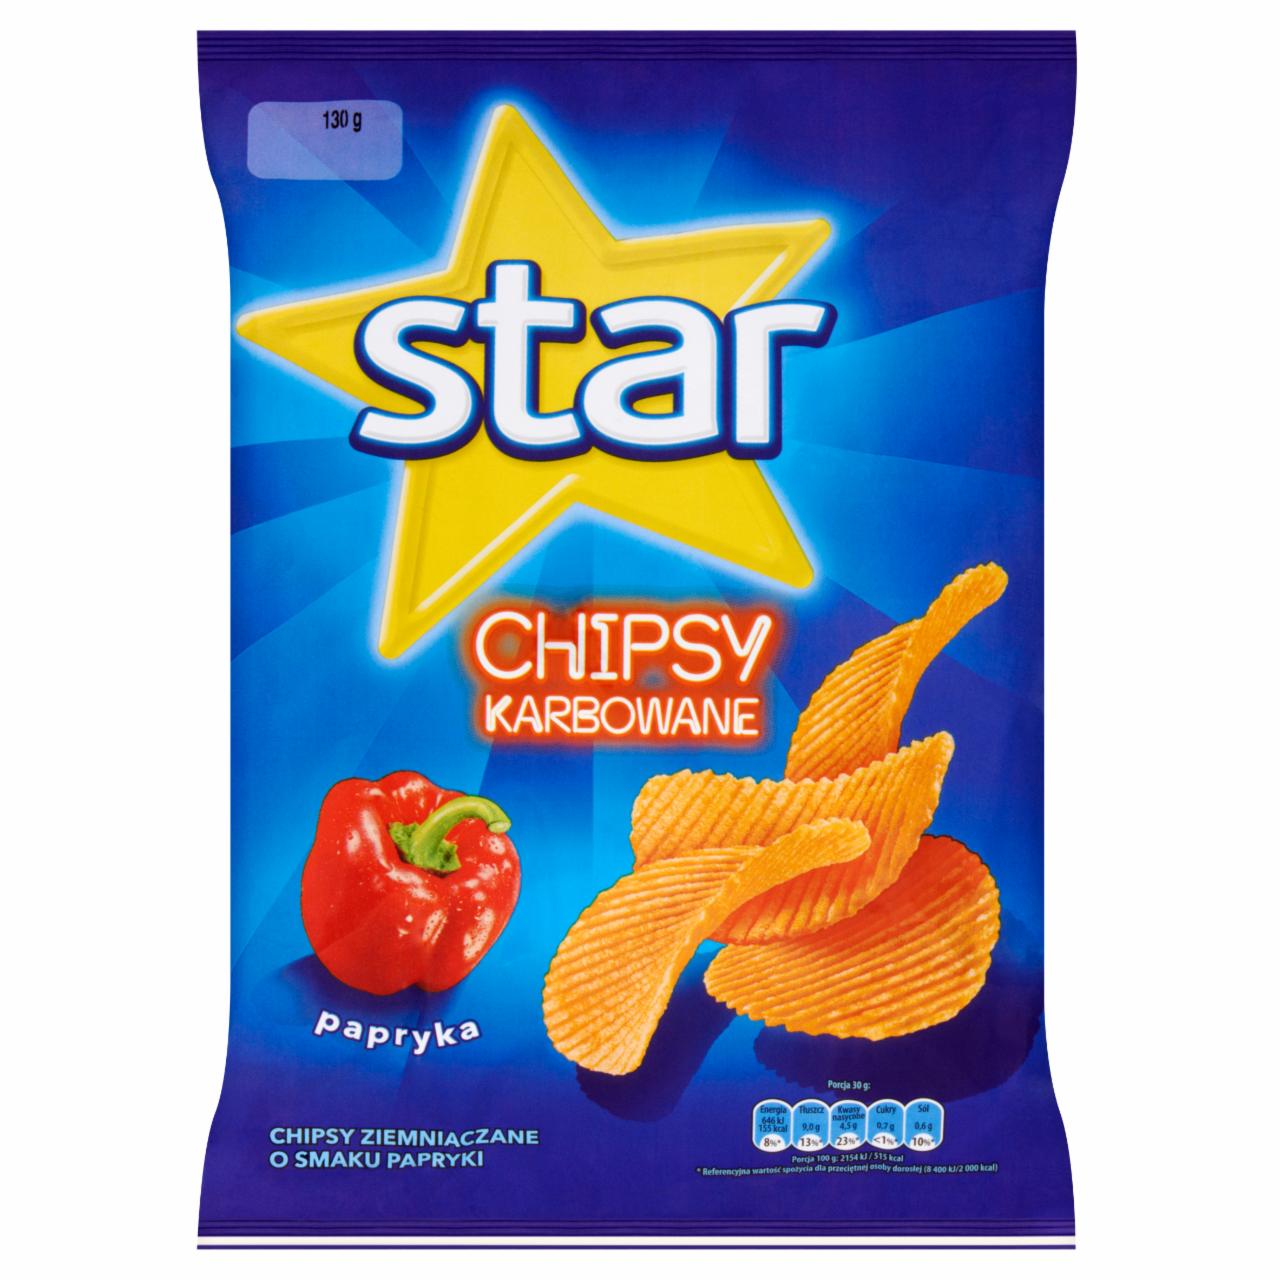 Zdjęcia - Star Chipsy karbowane papryka 130 g